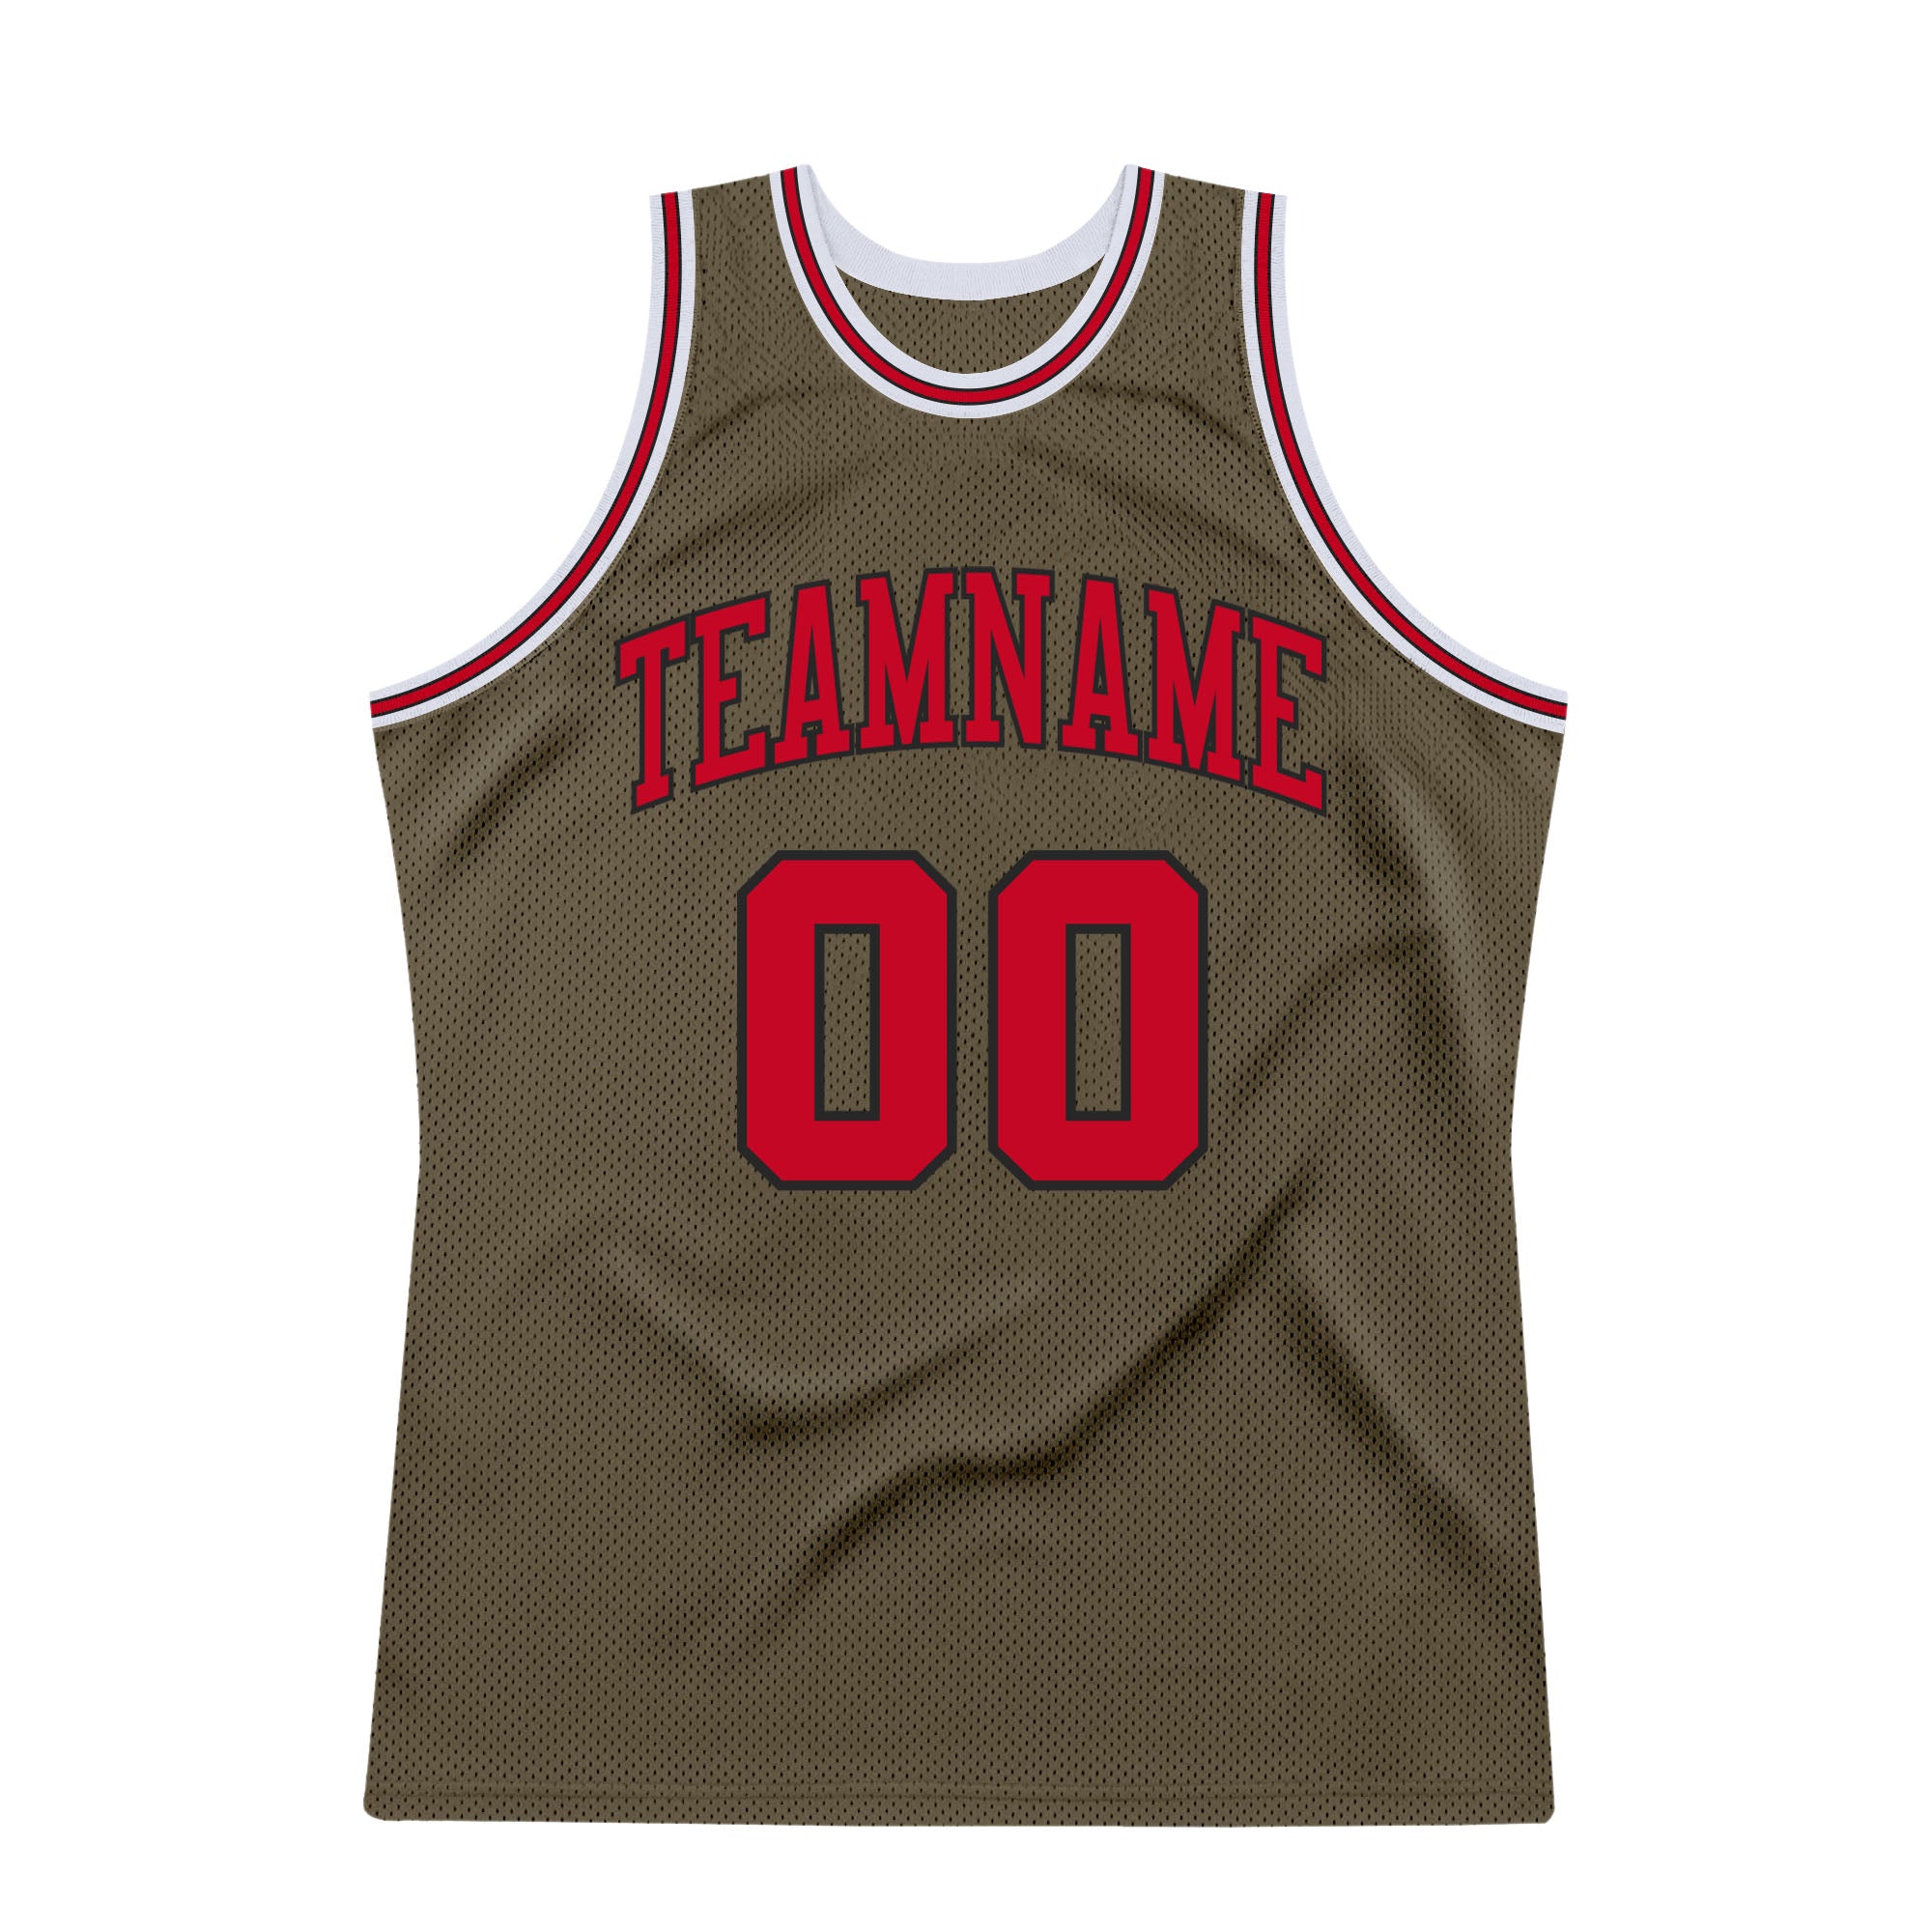 Basketball Jersey T-Shirt Design Ideas - Custom Basketball Jersey